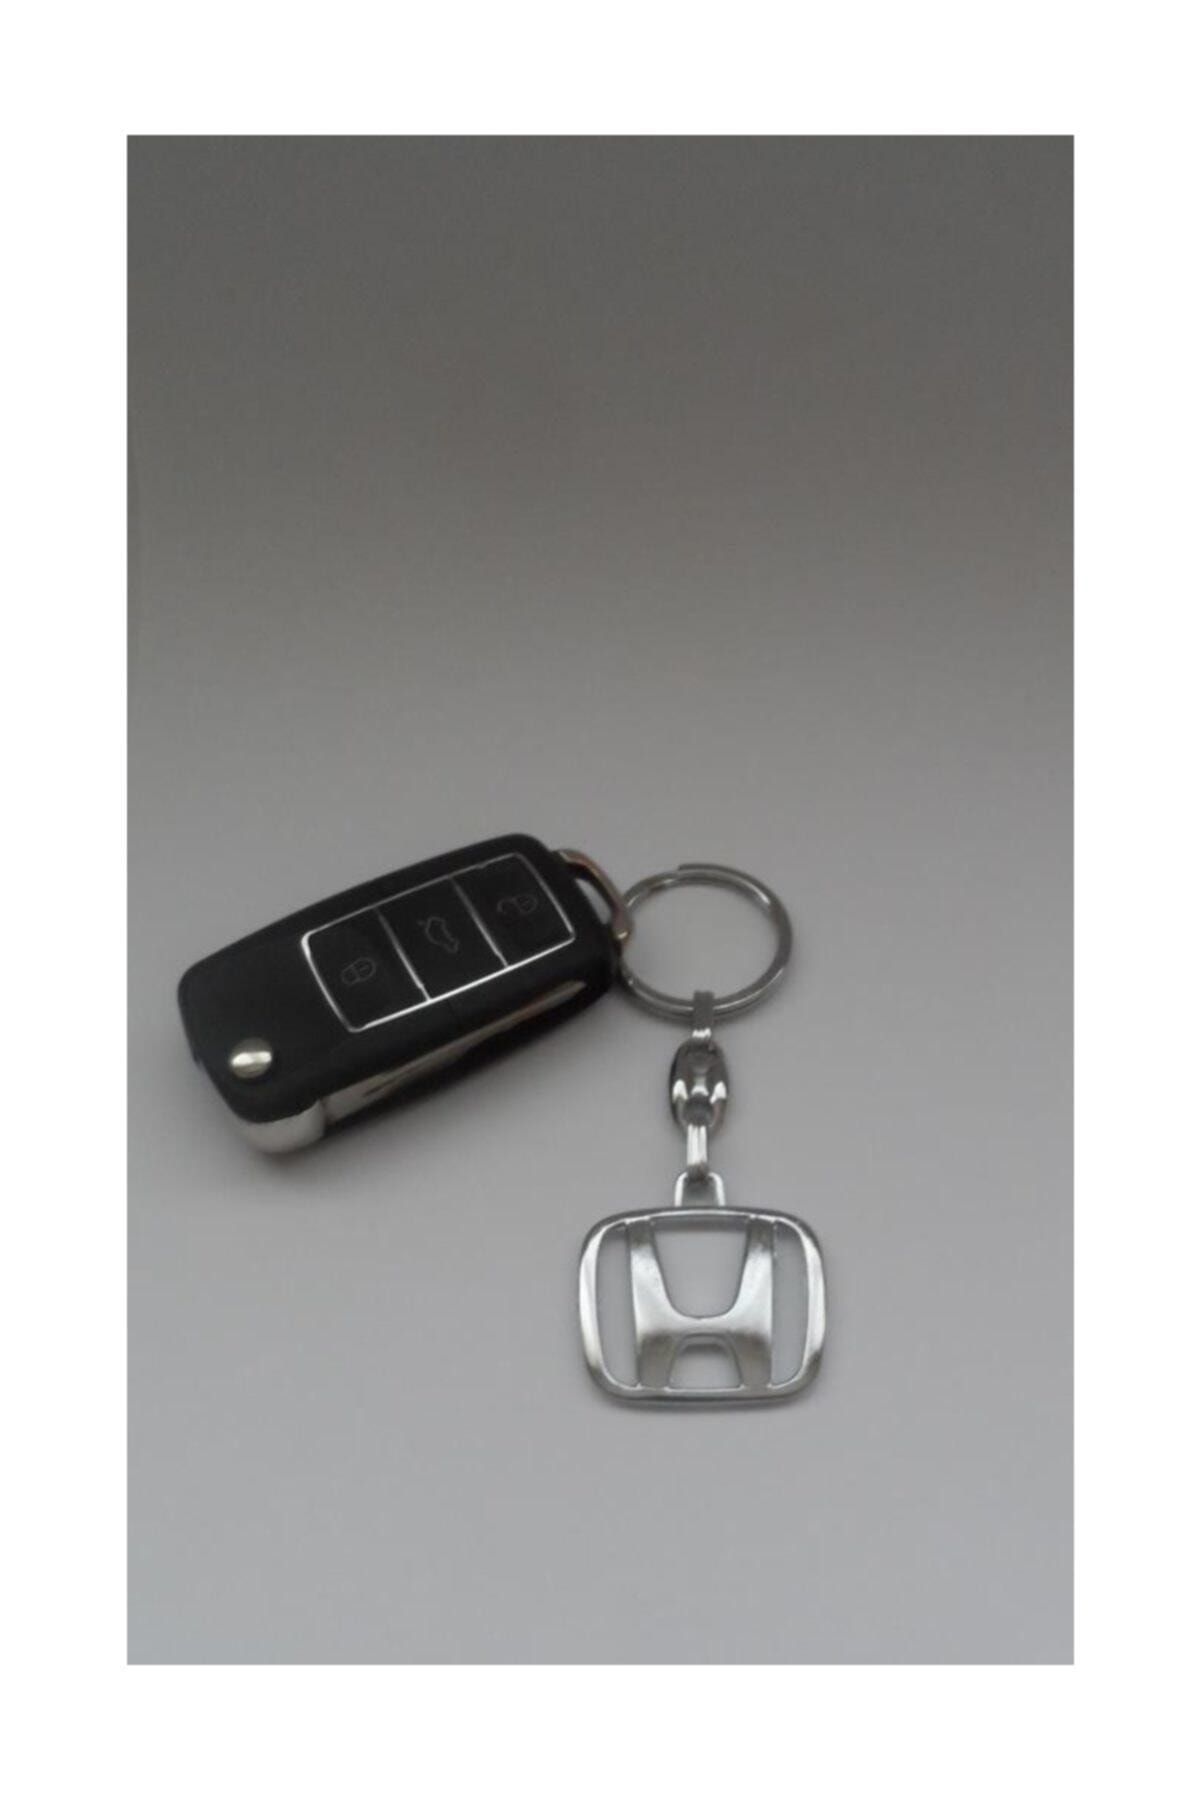 ENES Honda Araba Anahtarlığı 3d Krom Anahtarlık Metal Anahtarlık